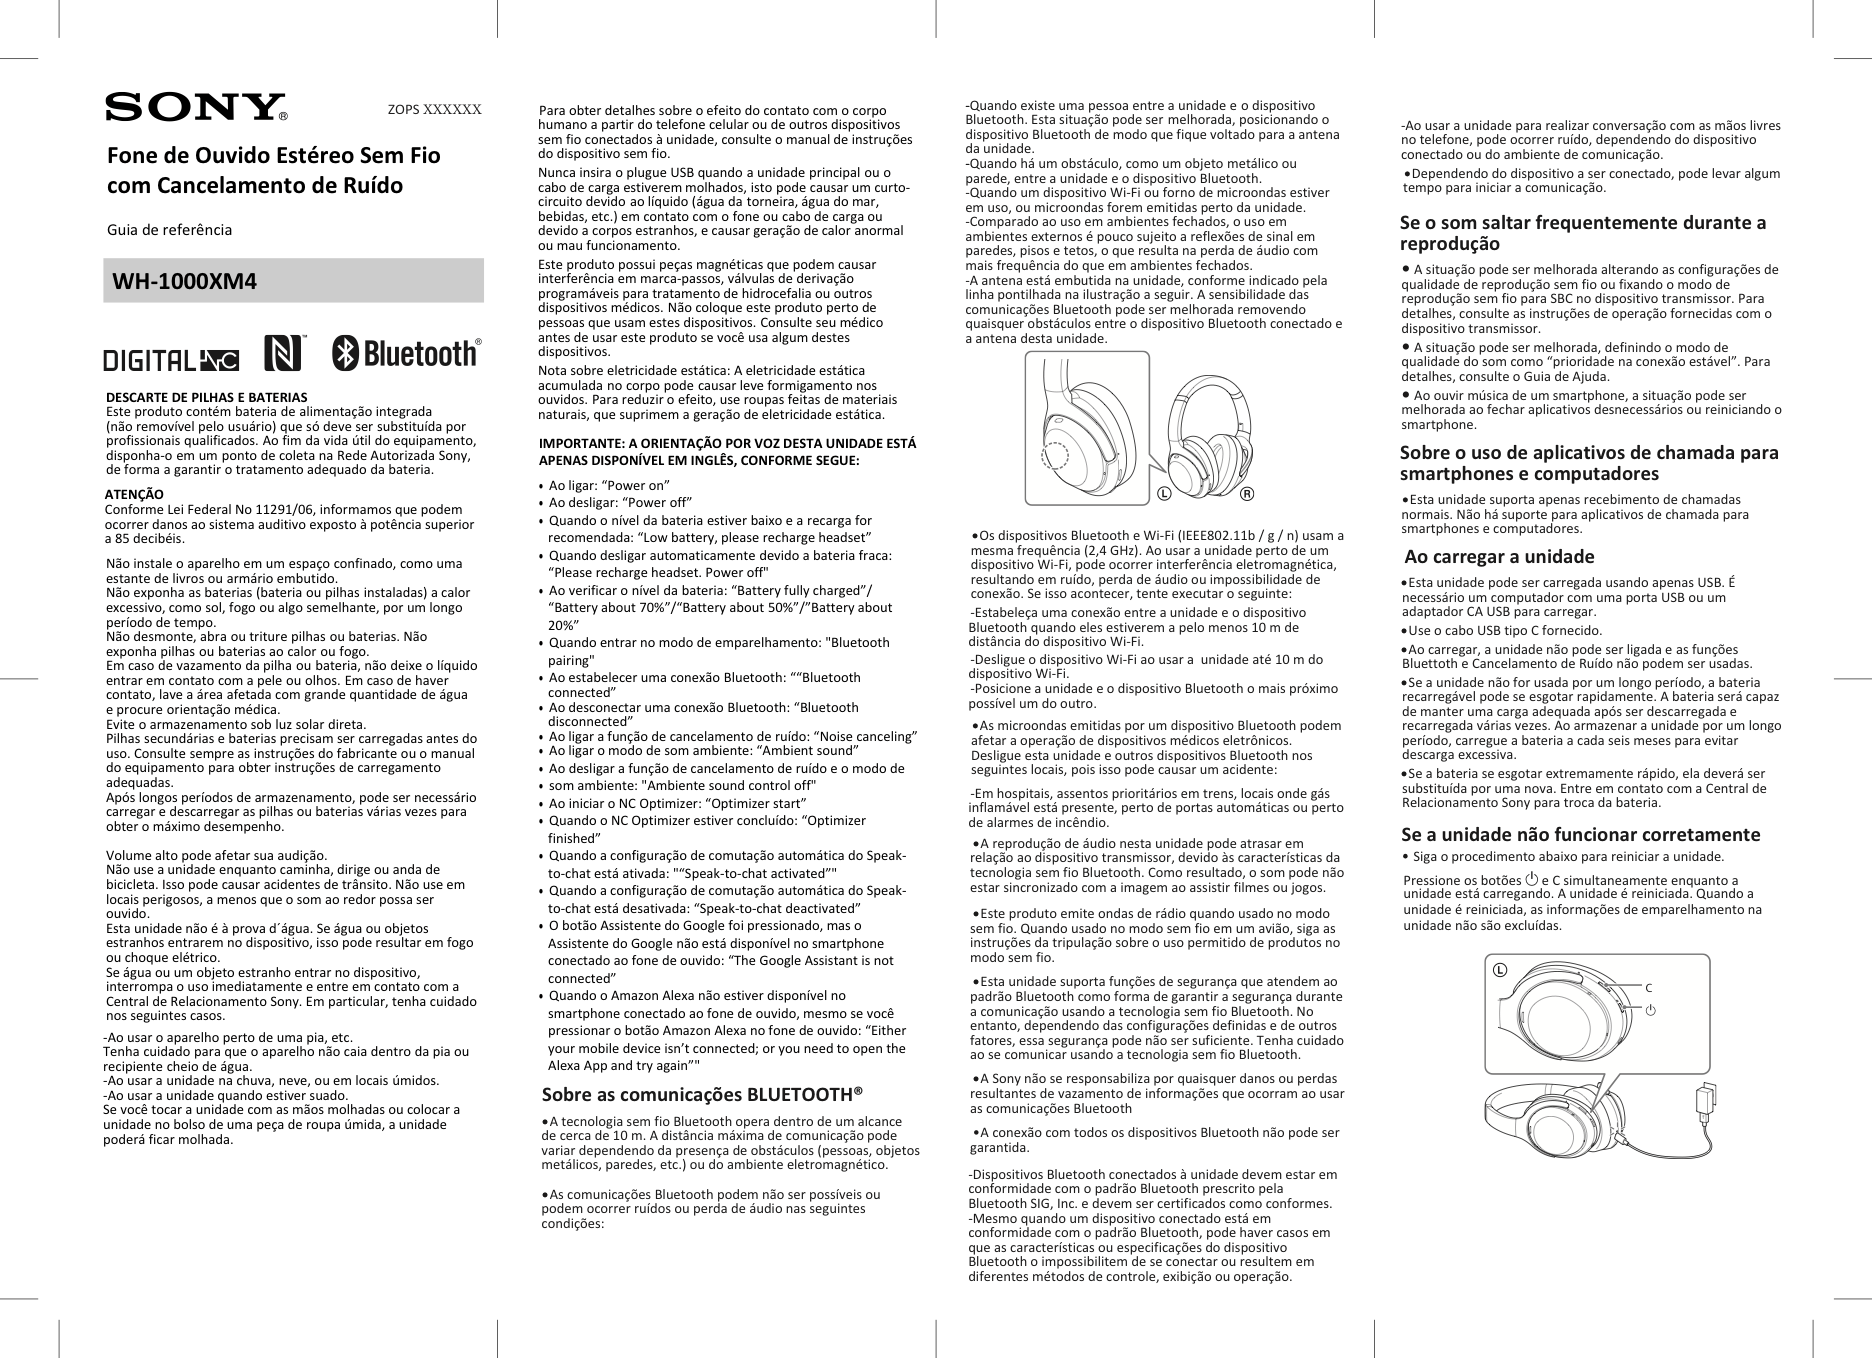 WH-1000XM4-Manual-de-Instrucoes-01